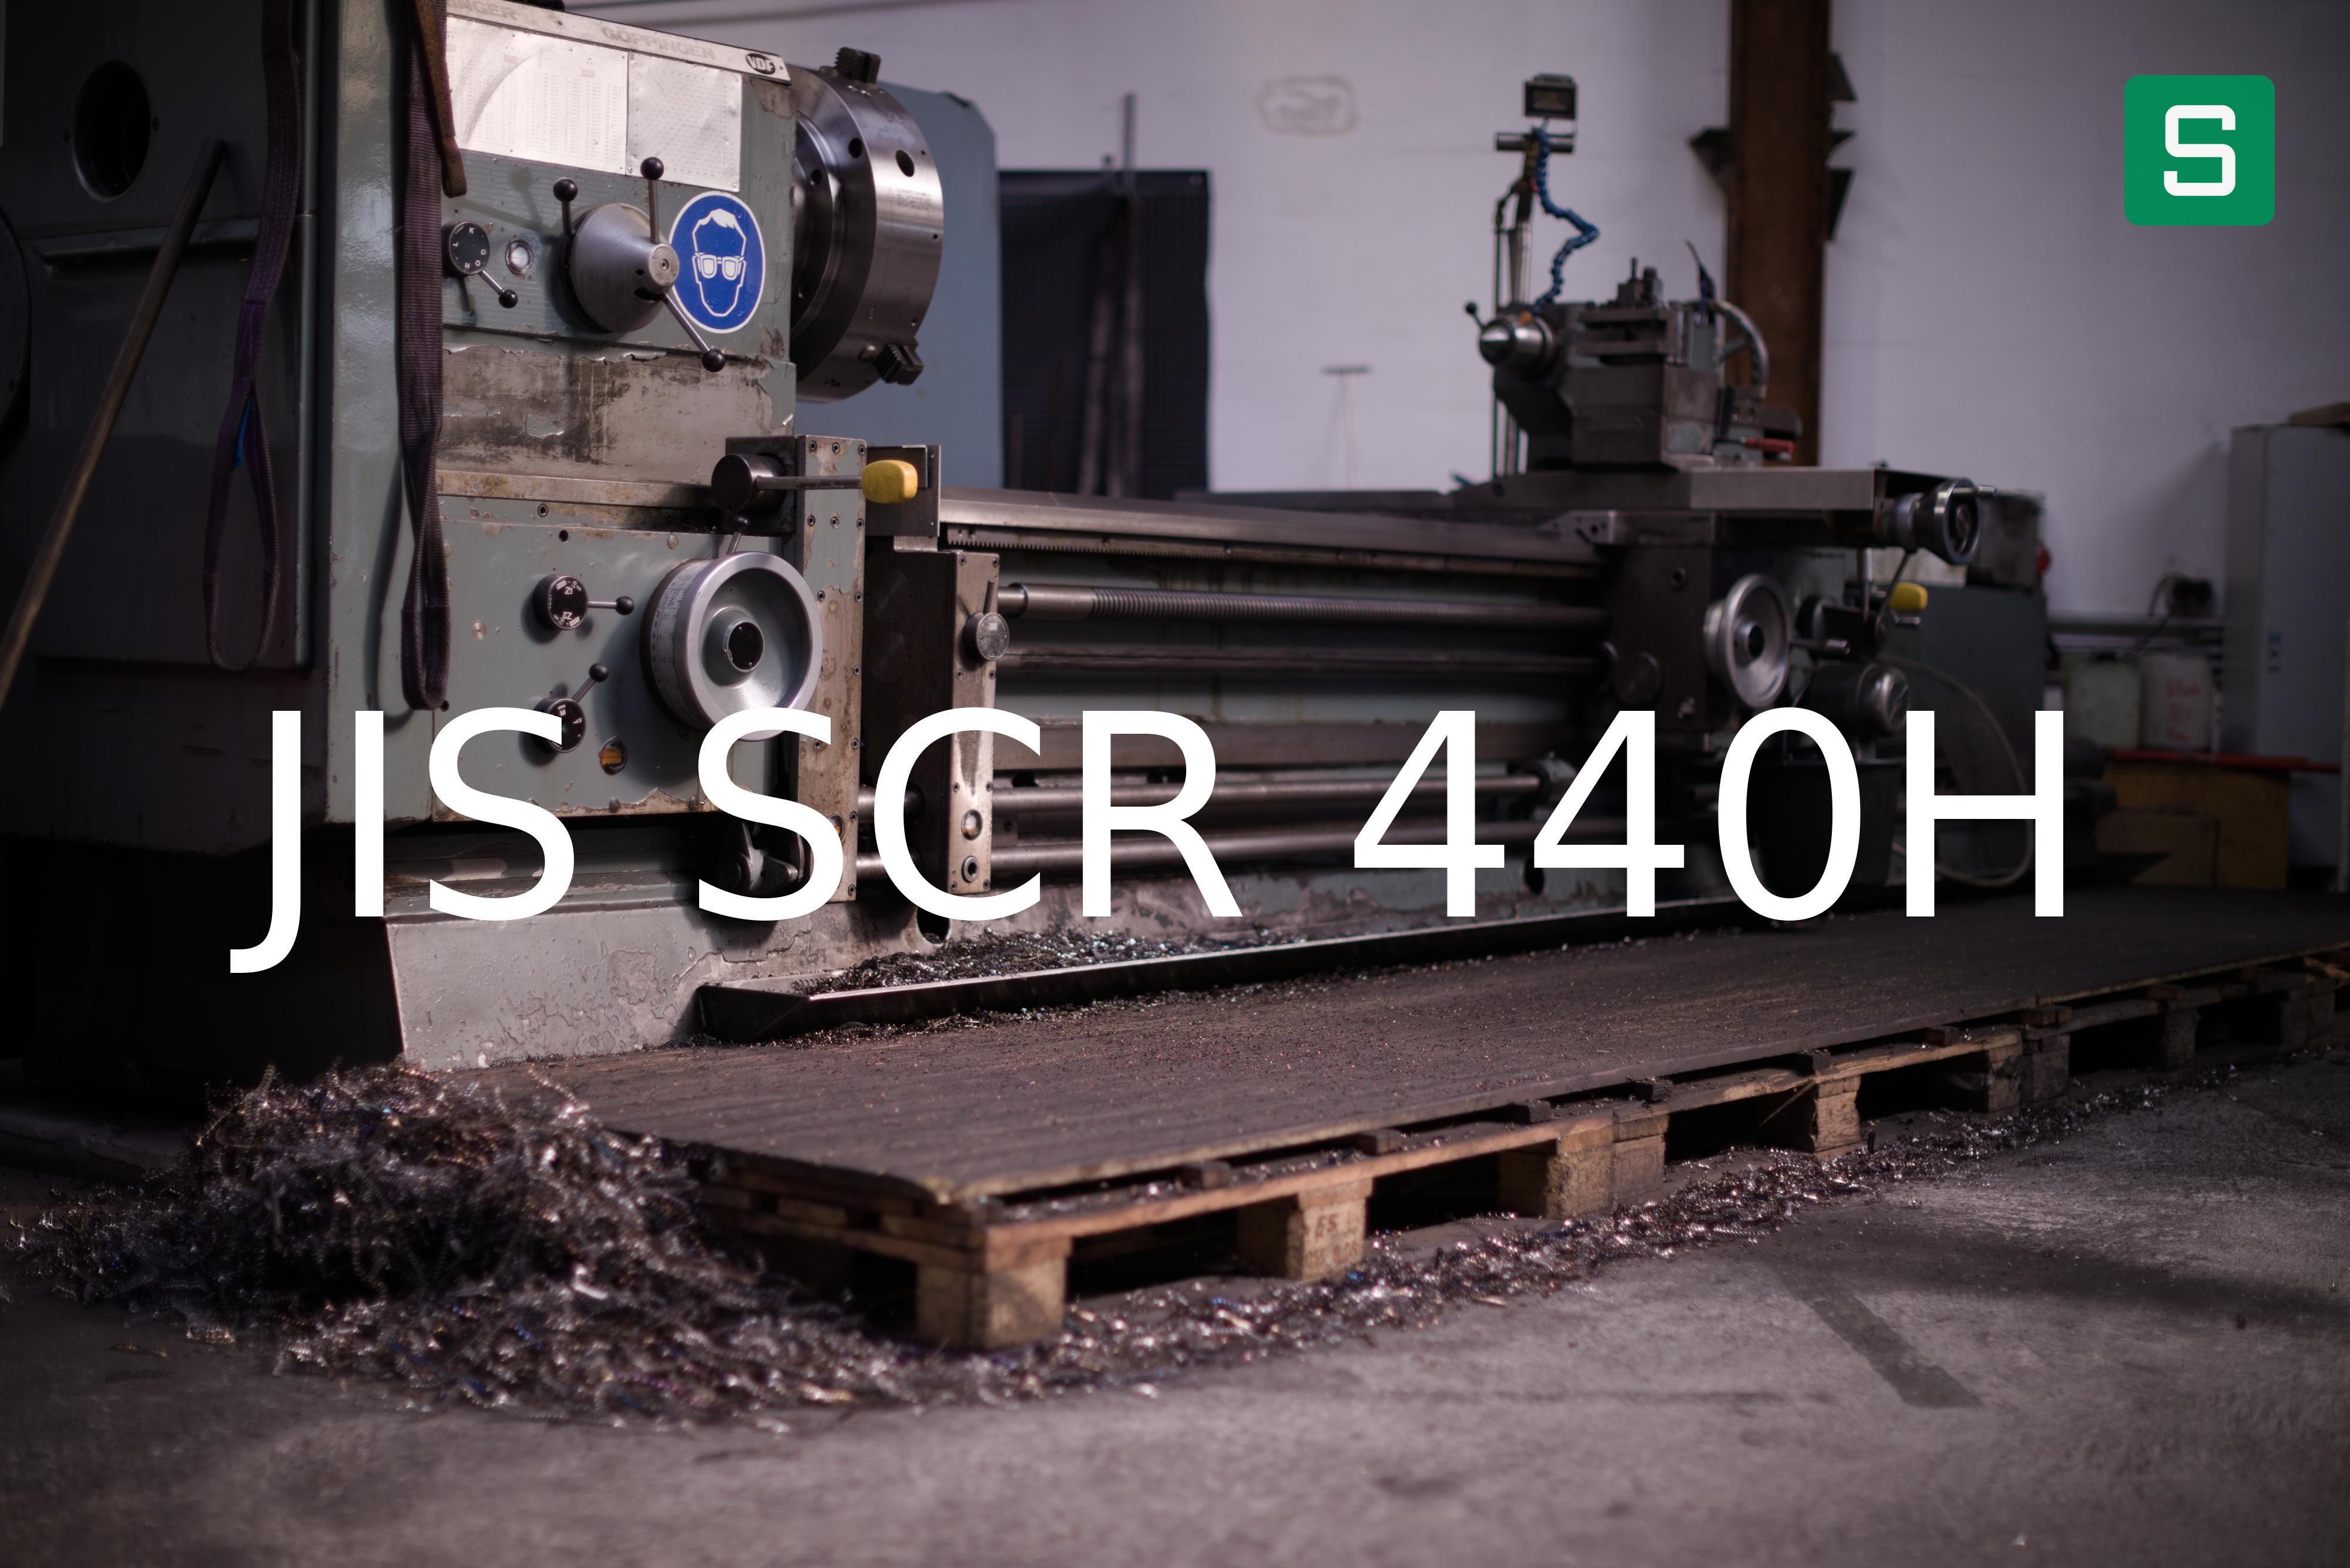 Steel Material: JIS SCR 440H